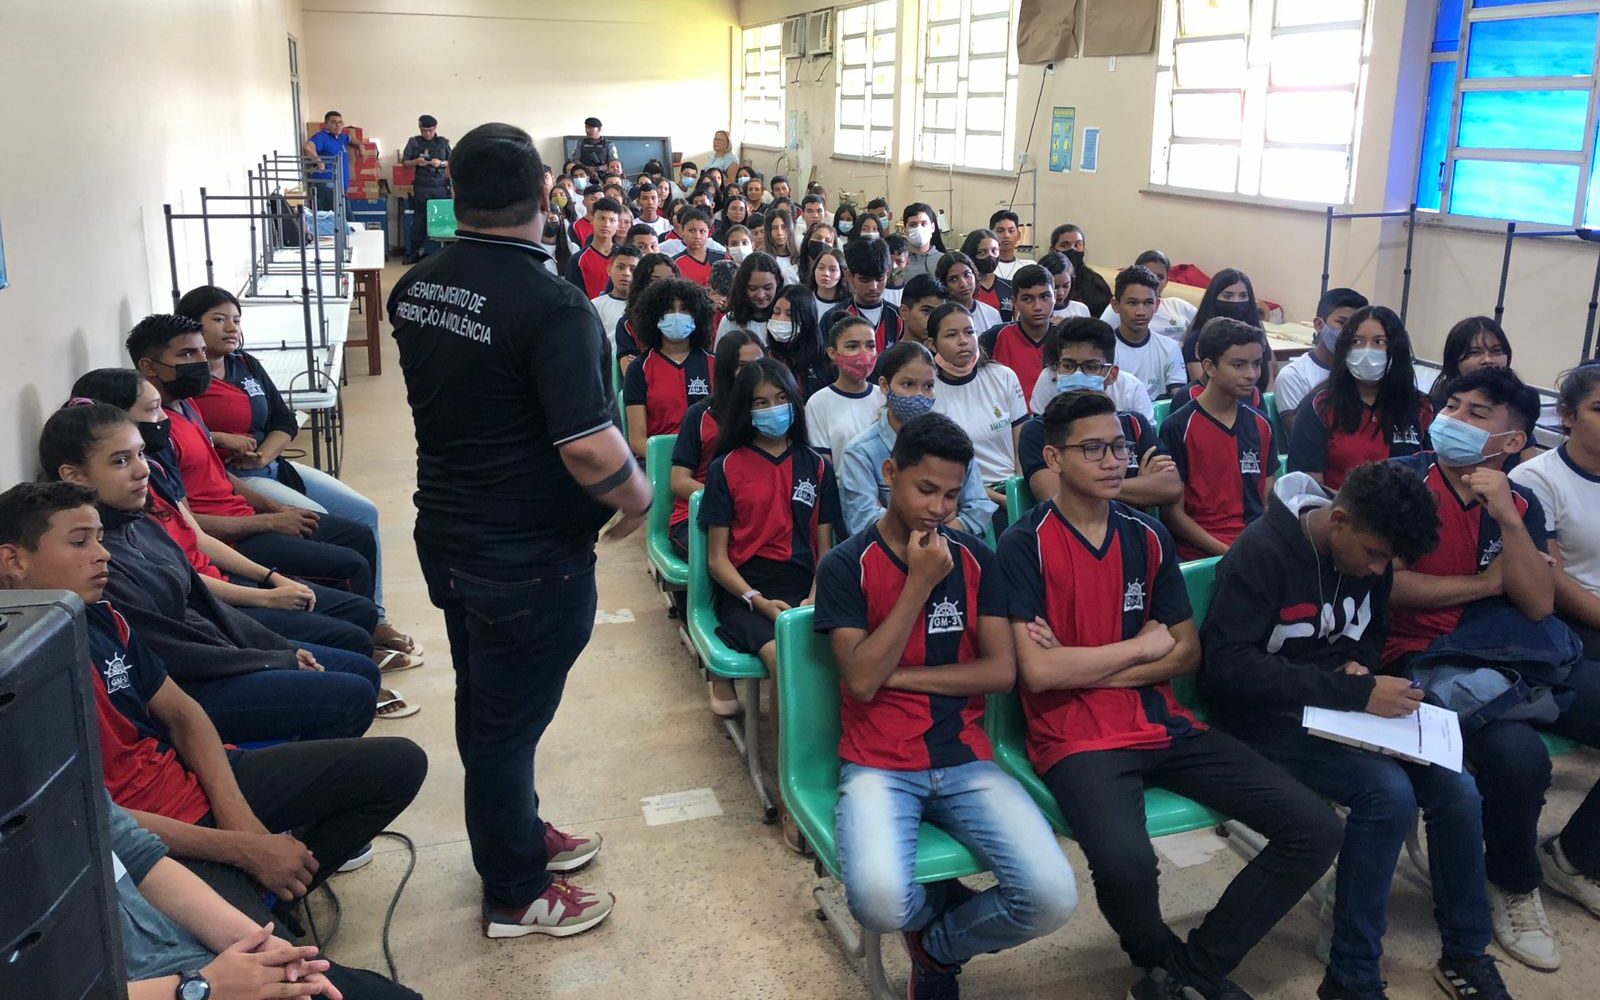 MK+ Academy, escola voltada ao desenvolvimento de games, chega a Manaus -  JCAM 4.0